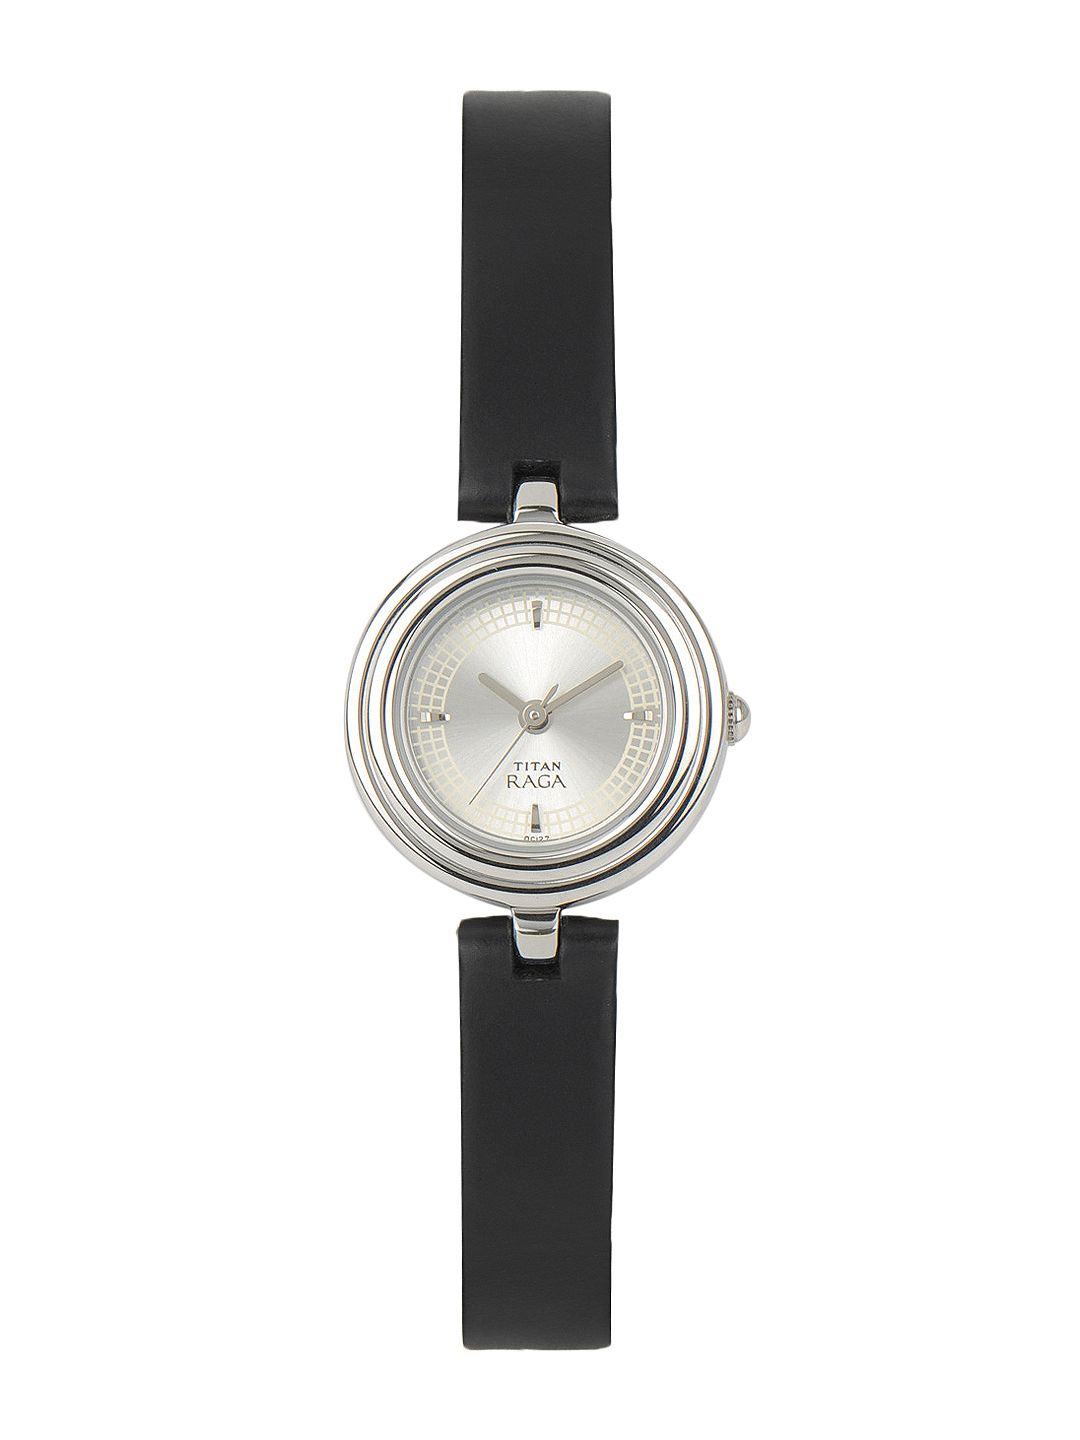 Titan Raga Women Silver-Toned Dial Watch 2498SL01 Price in India